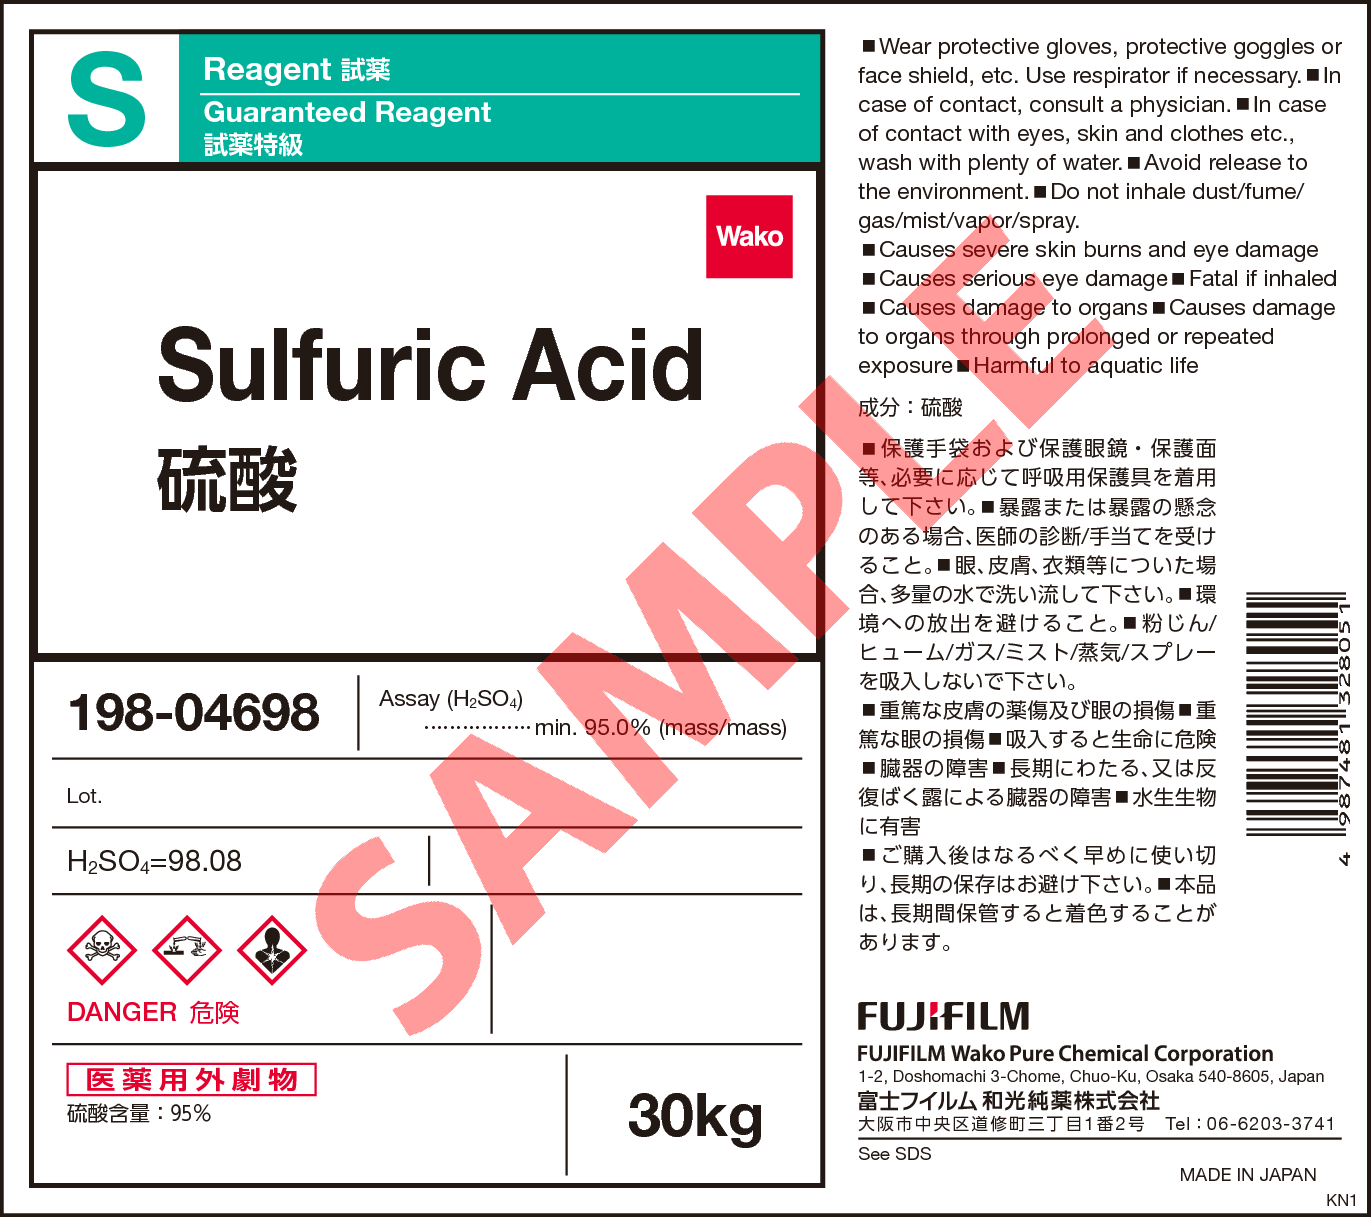 7664-93-9・硫酸・Sulfuric Acid・198-04693・198-04698・192-04696 